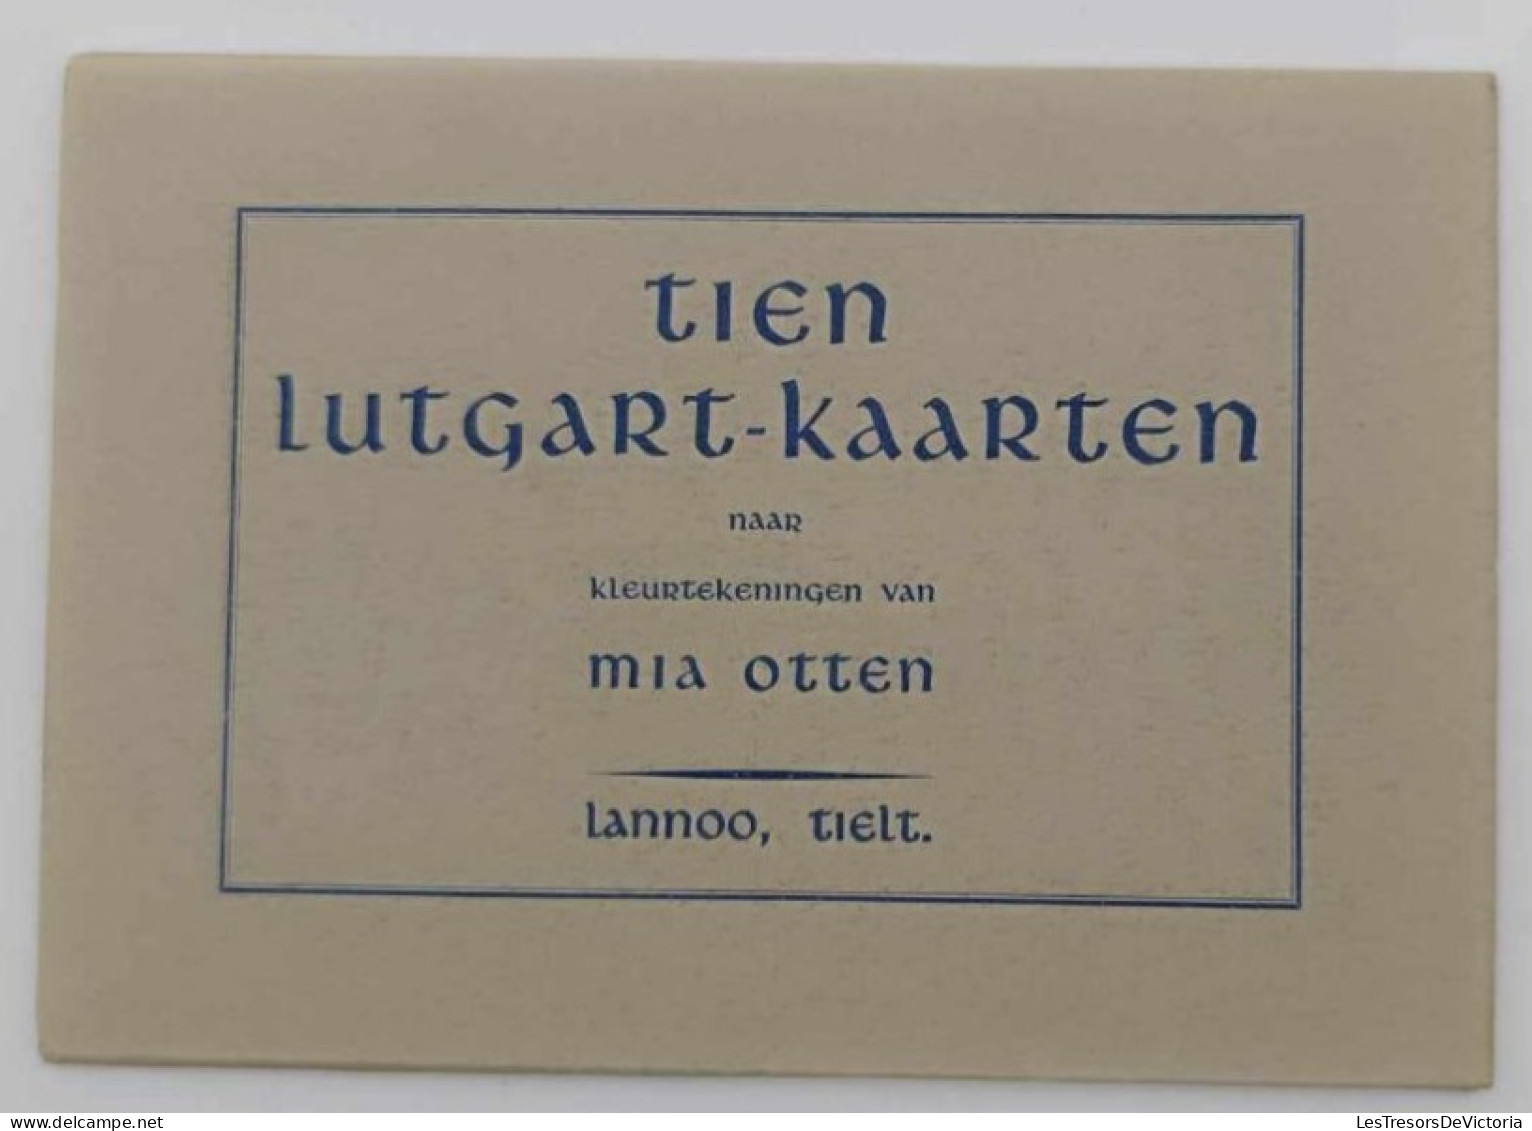 Carnets De Cartes Religieuses - Tien Lutgard Kaarten Naar Kleurtekenningen Van Mia Otten - Lannoo Tielt - Collections & Lots